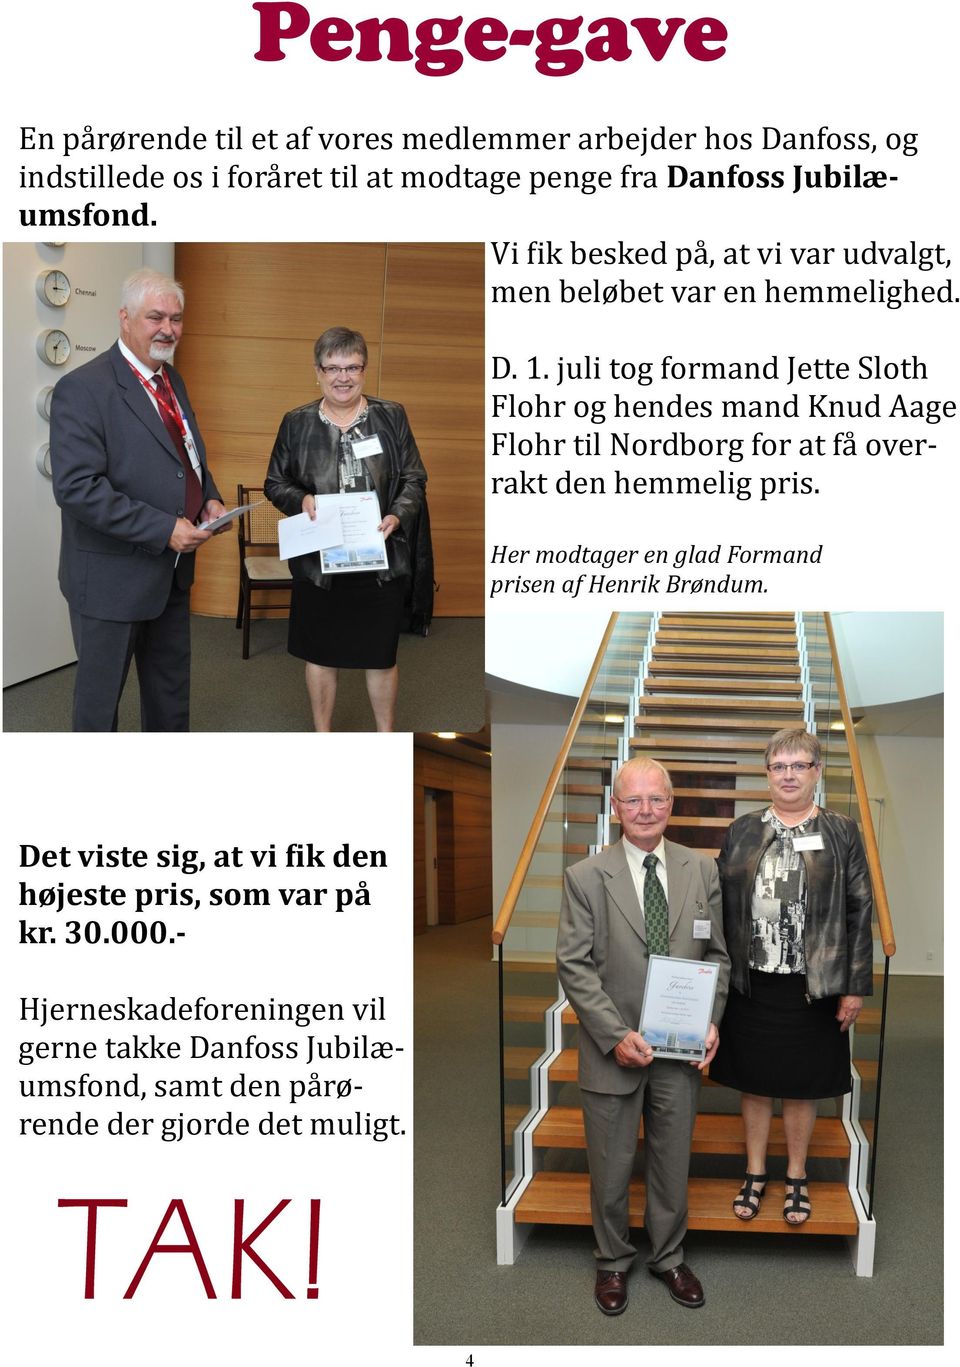 juli tog formand Jette Sloth Flohr og hendes mand Knud Åage Flohr til Nordborg for at fa overrakt den hemmelig pris.